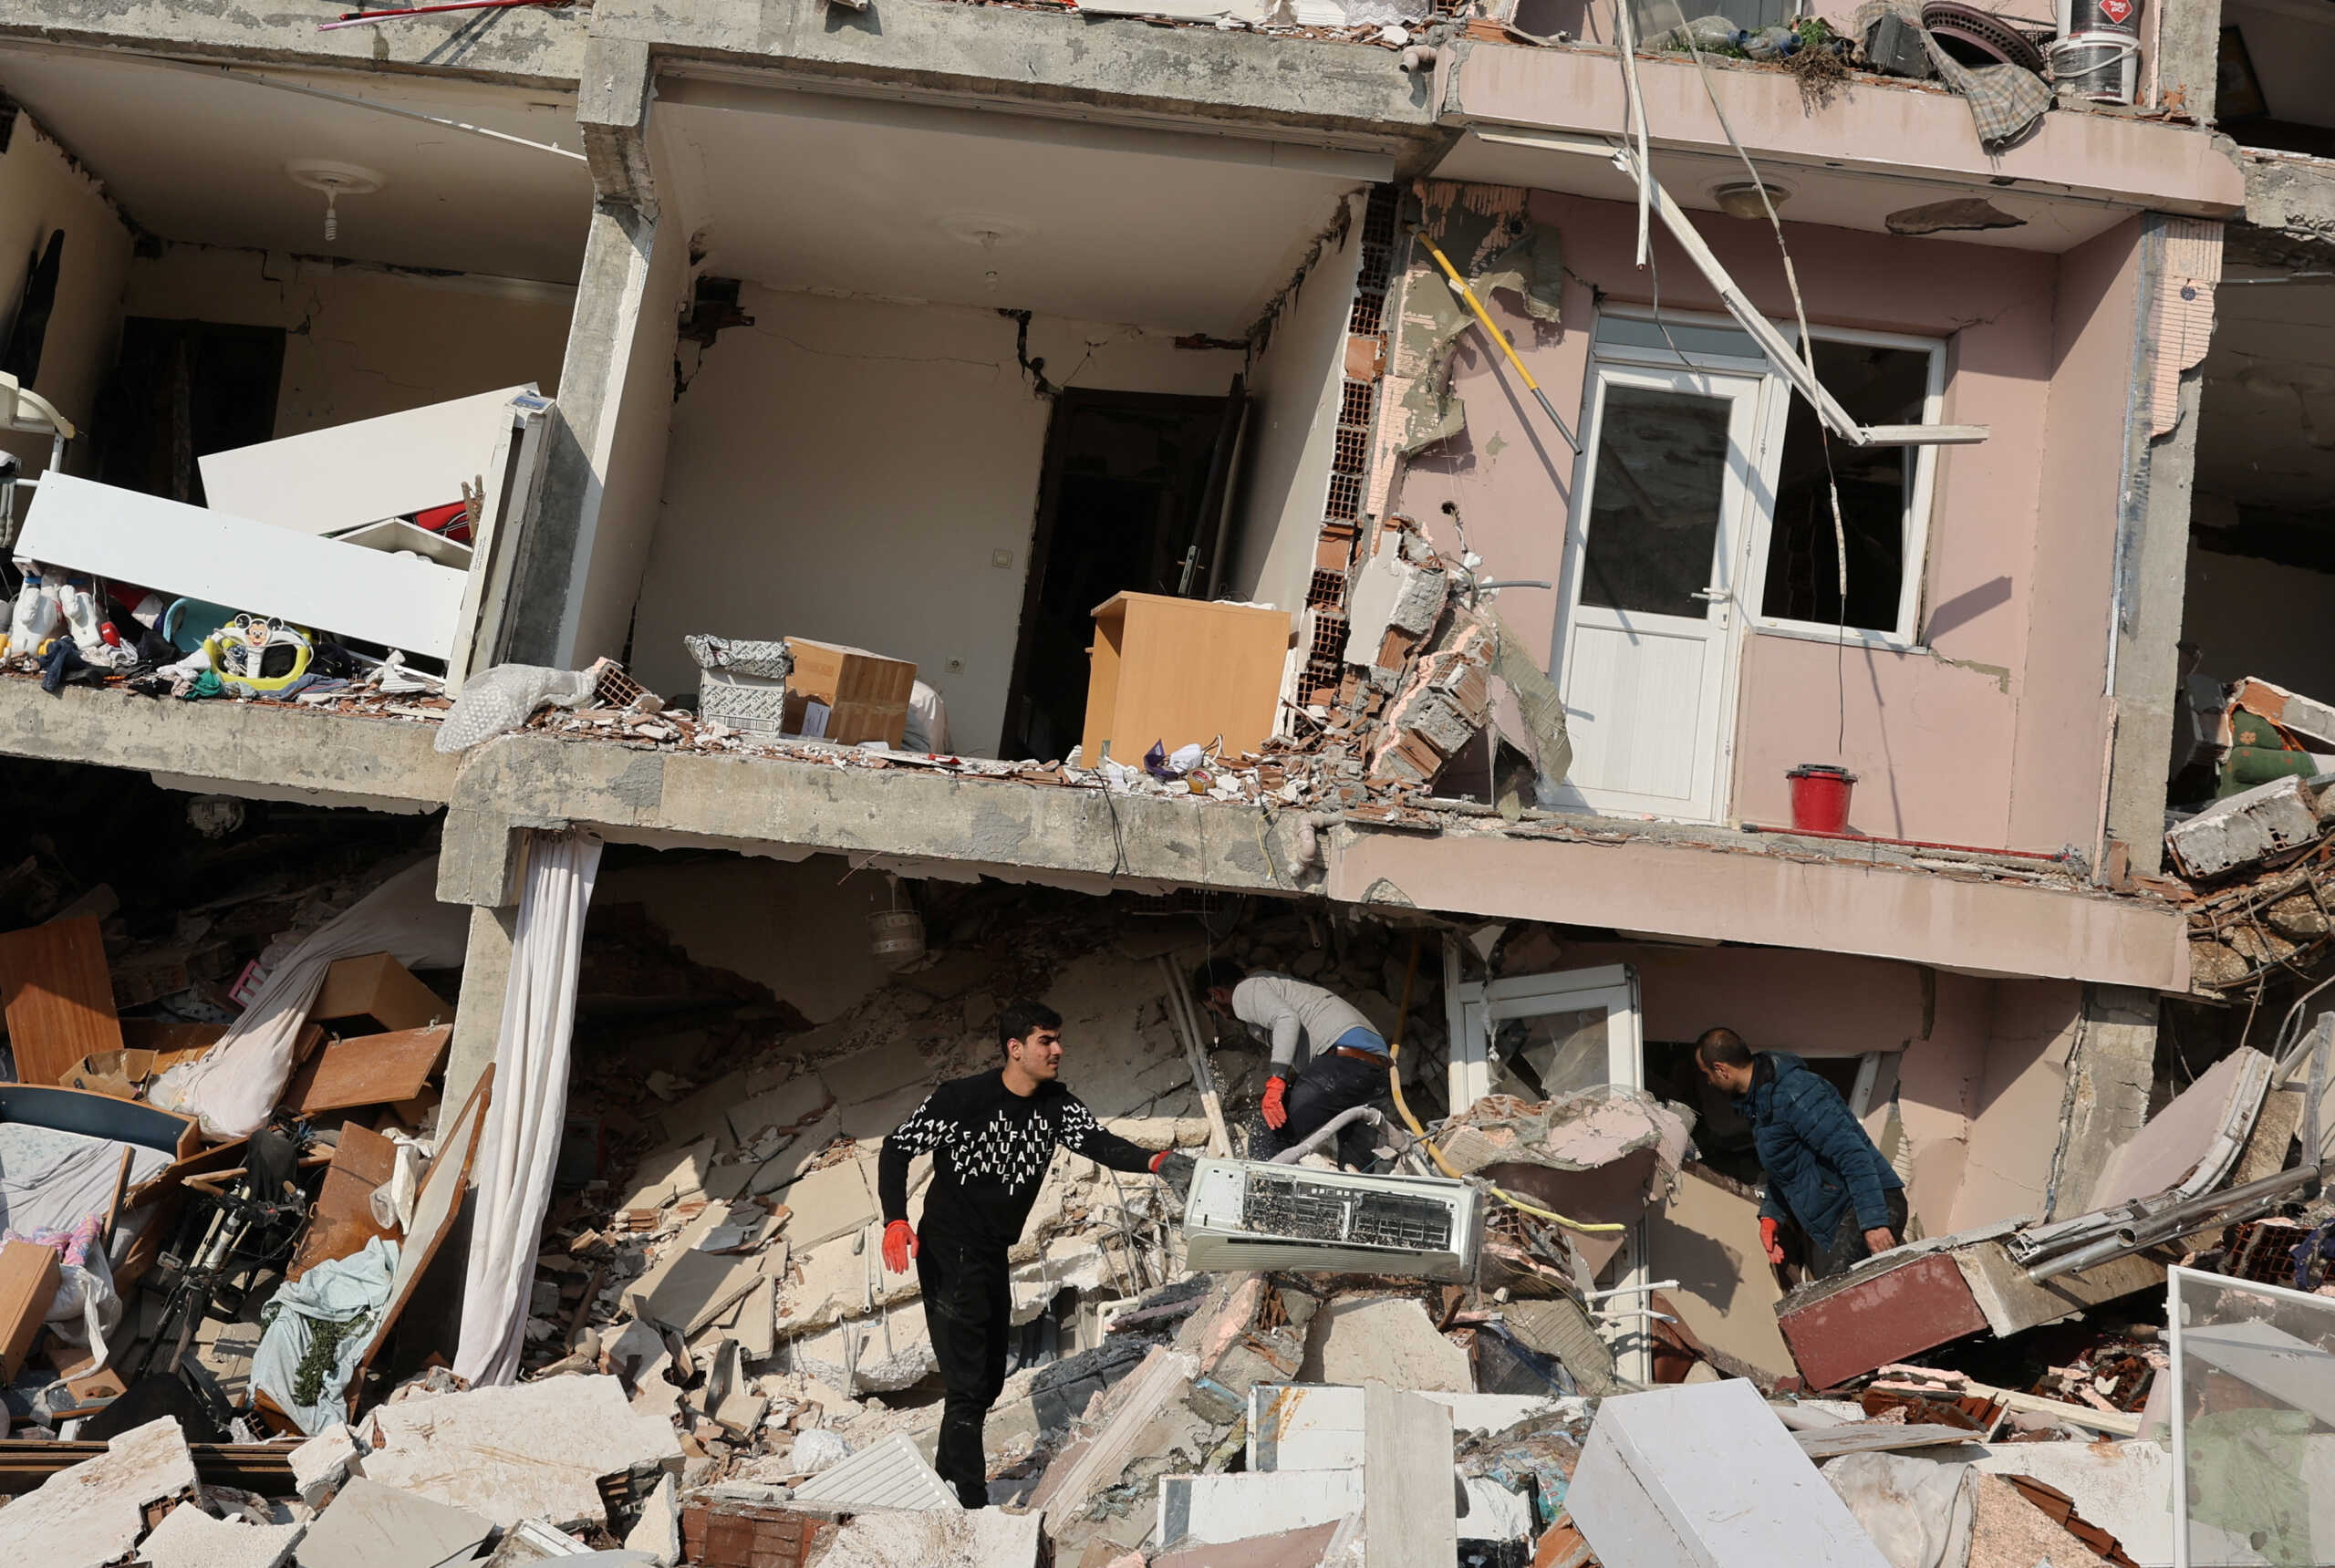 Τσελέντης σε Live News: Οι νεκροί από τον σεισμό θα ξεπεράσουν τους 20.000